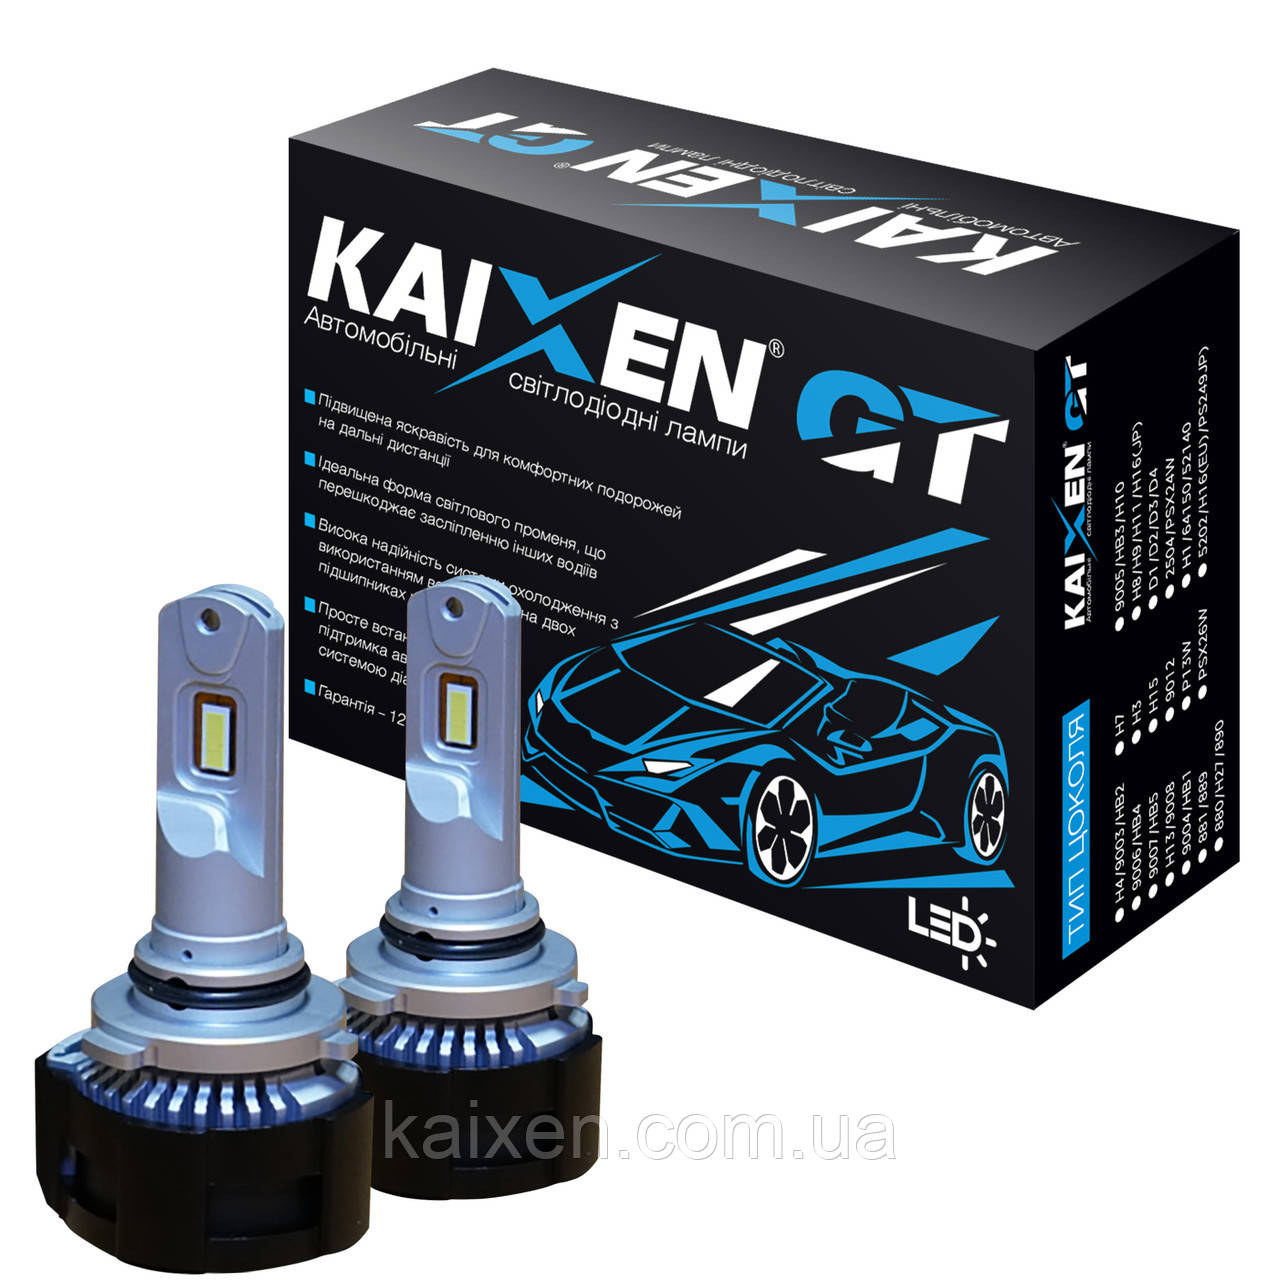 Автомобільні лампи LED HB4/9006 50W-6000K KAIXEN GT